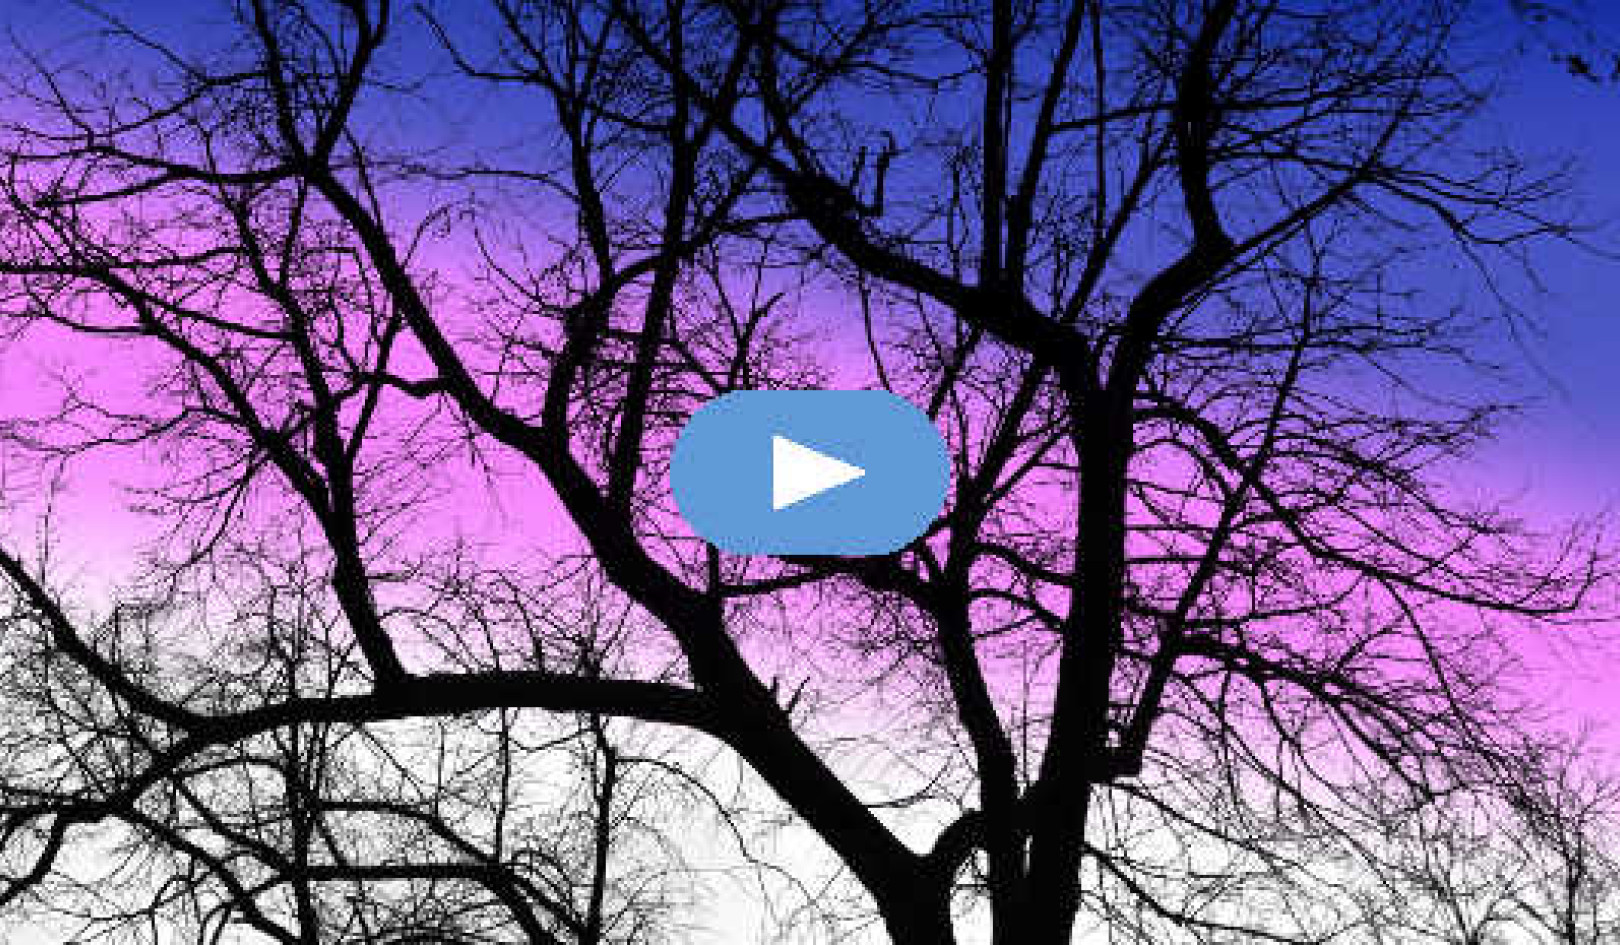 ต้นไม้ในฤดูหนาวยังคงเป็นต้นไม้ (วิดีโอ)